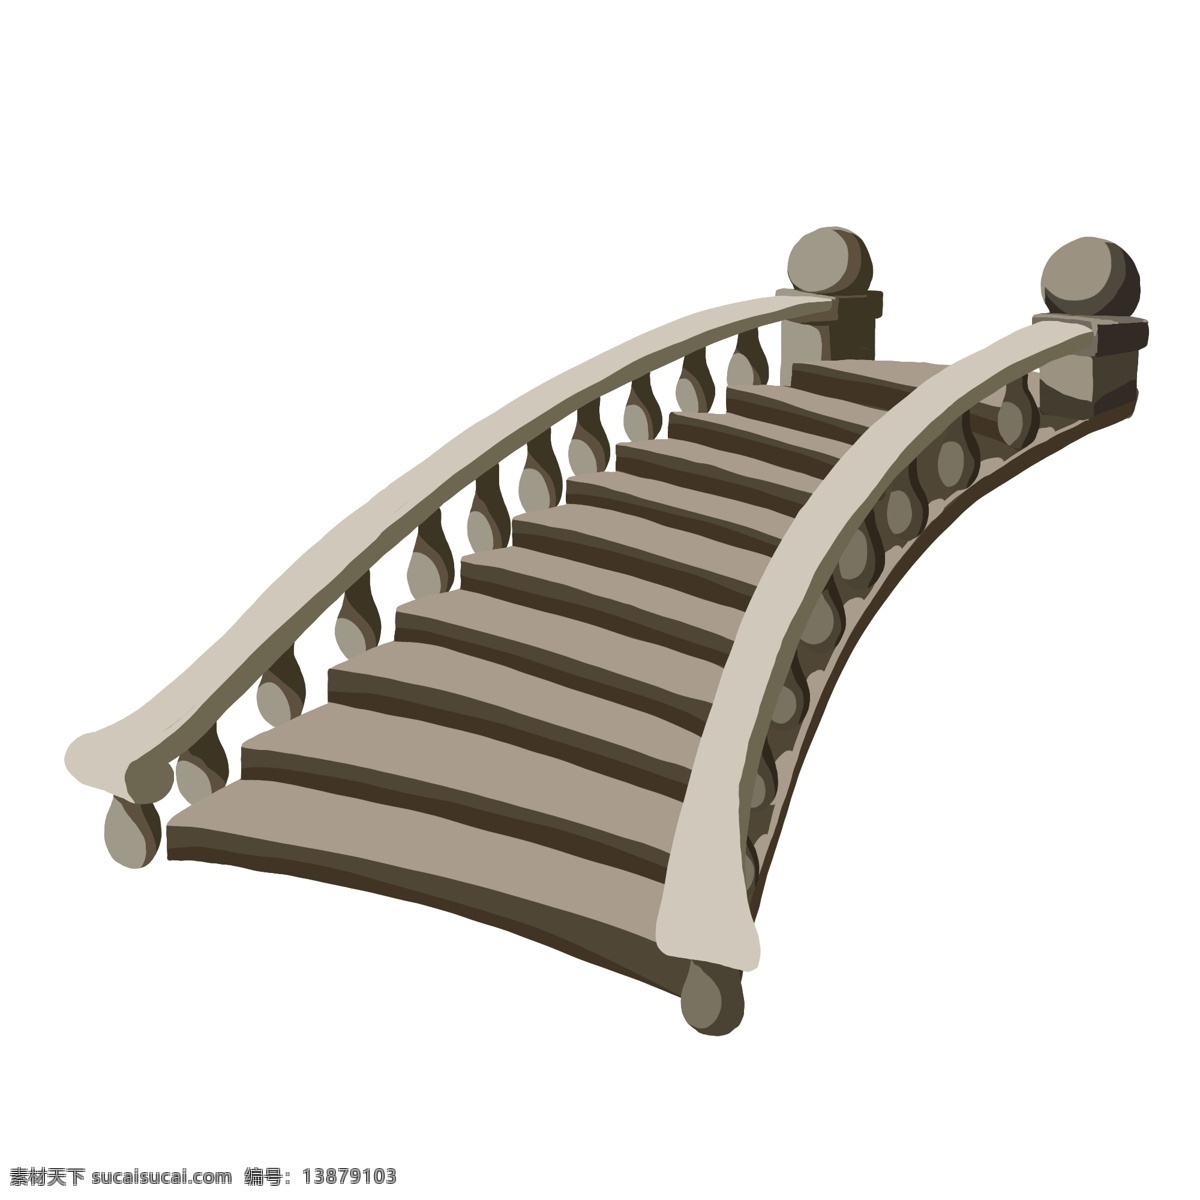 漂亮 楼梯 装饰 插画 漂亮的楼梯 灰色的楼梯 精美楼梯 卡通楼梯 楼梯装饰 楼梯插画 楼梯建筑